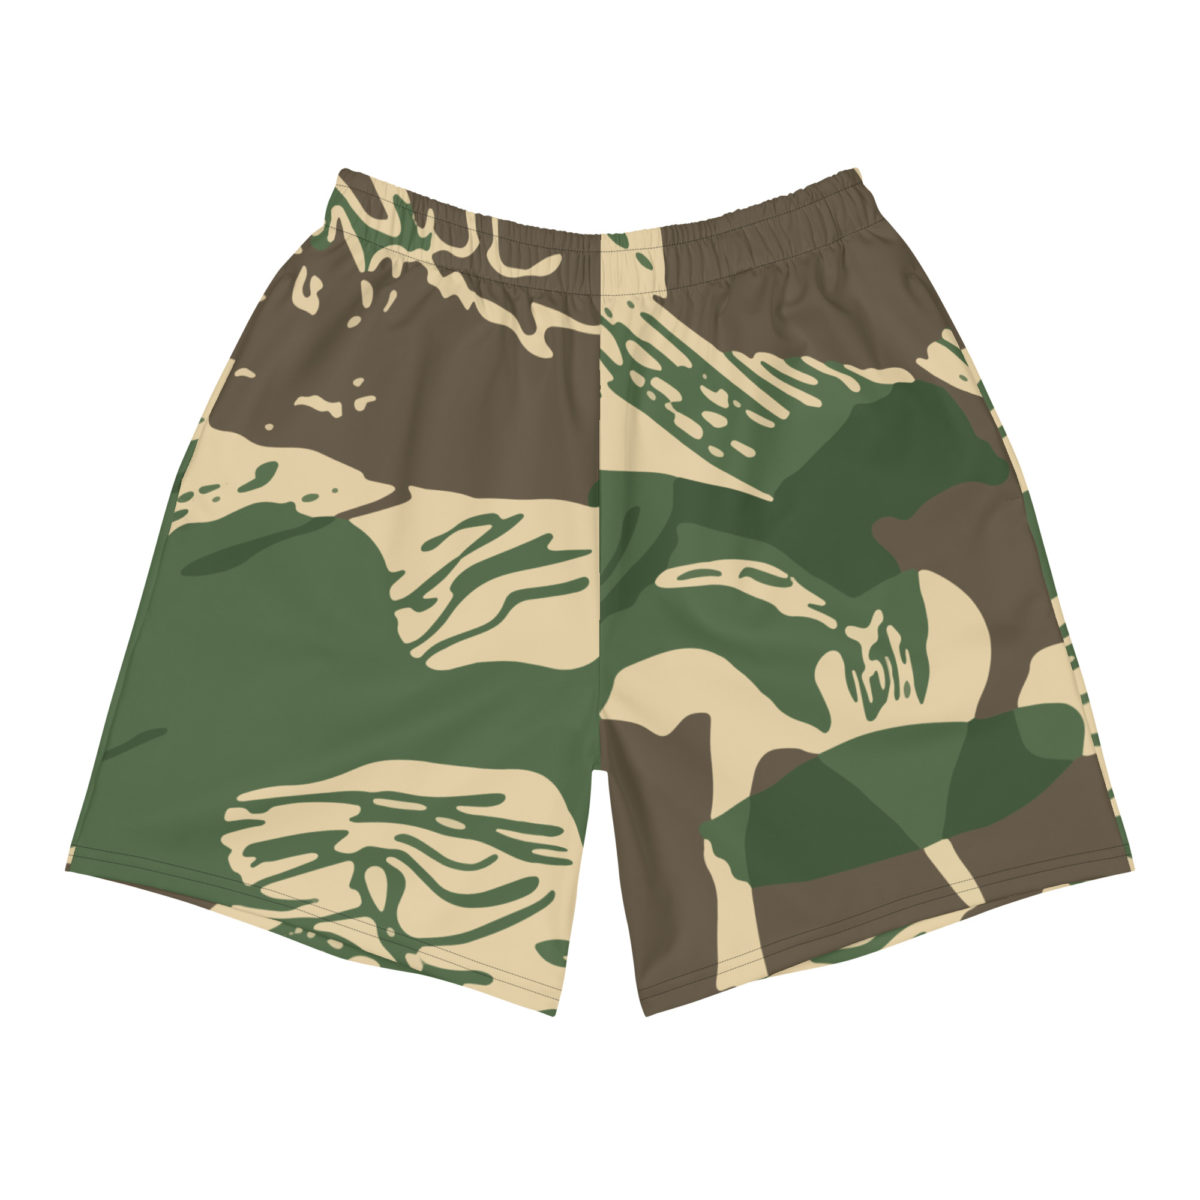 Rhodesian Brushstroke Camouflage v4 Men’s Athletic Long Shorts